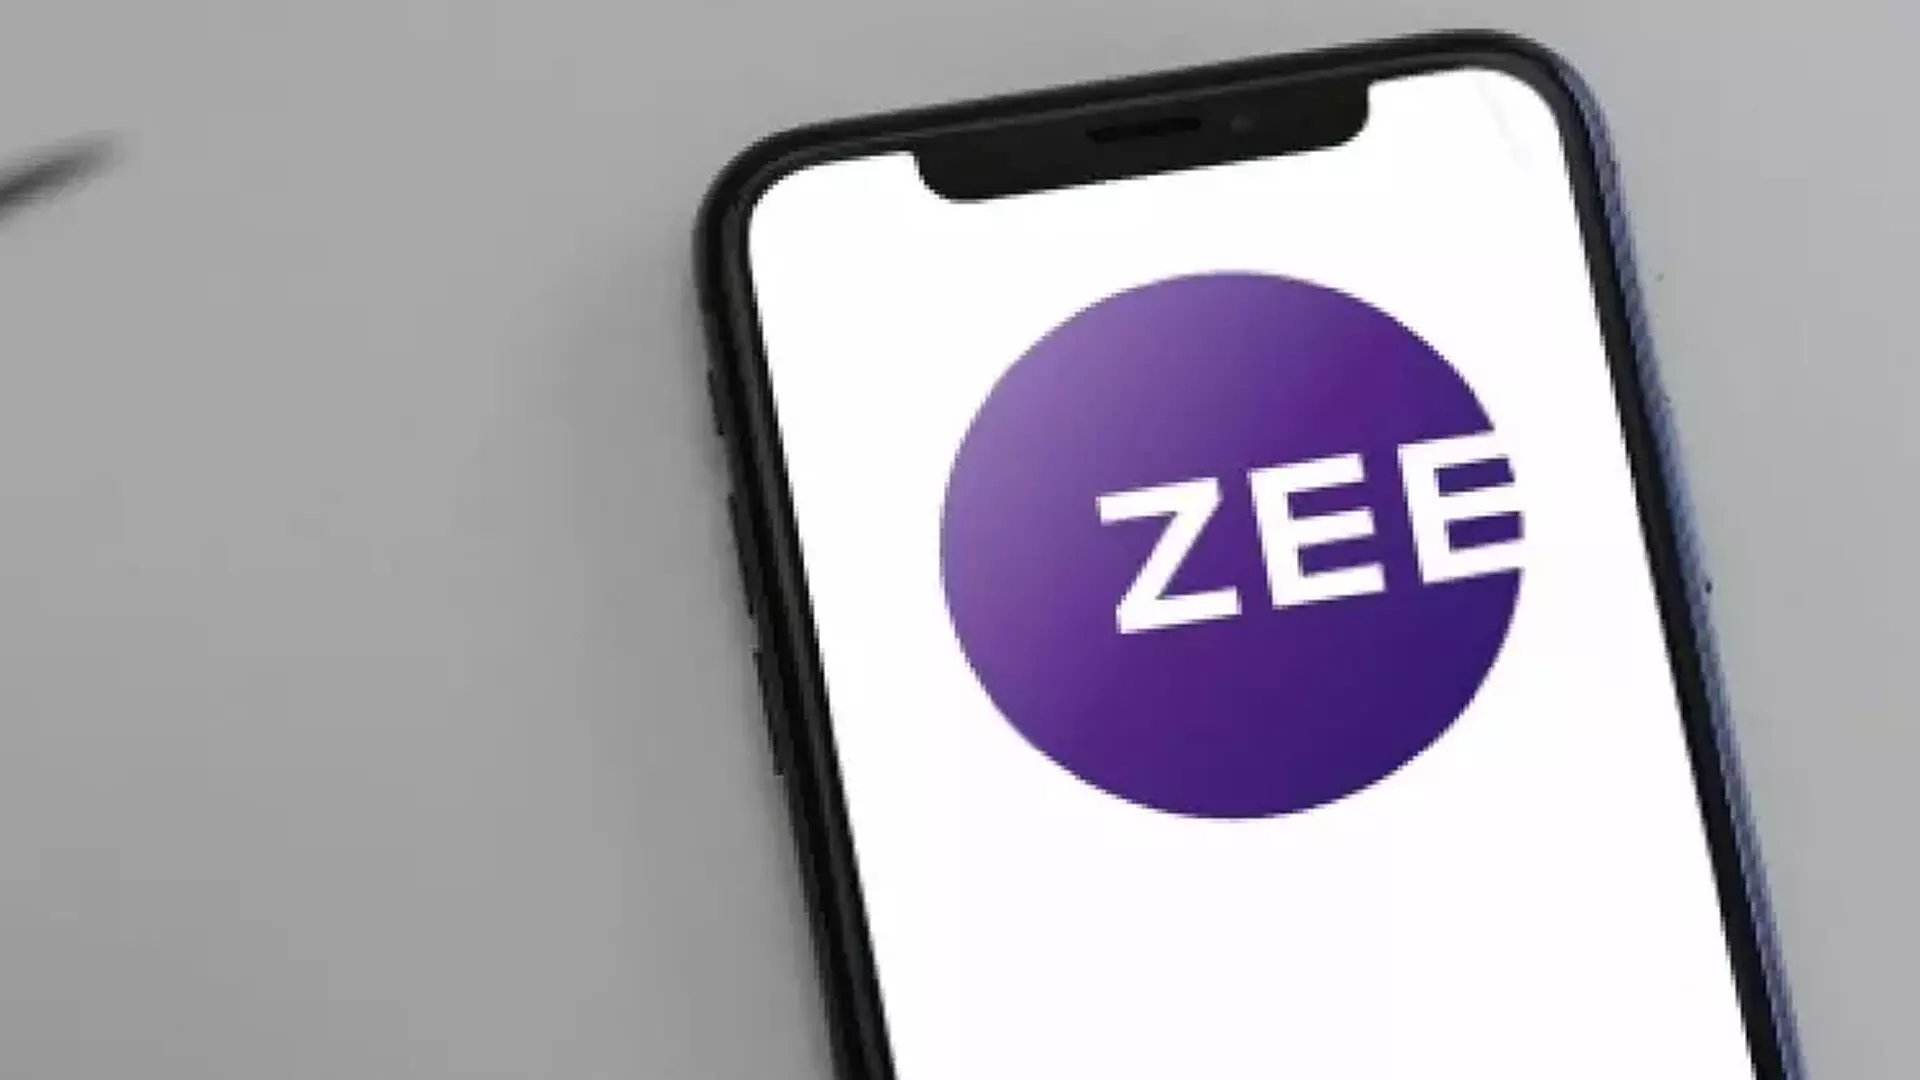 Zee एंटरटेनमेंट के शेयरधारकों ने 3 स्वतंत्र निदेशकों की नियुक्ति को मंजूरी दी